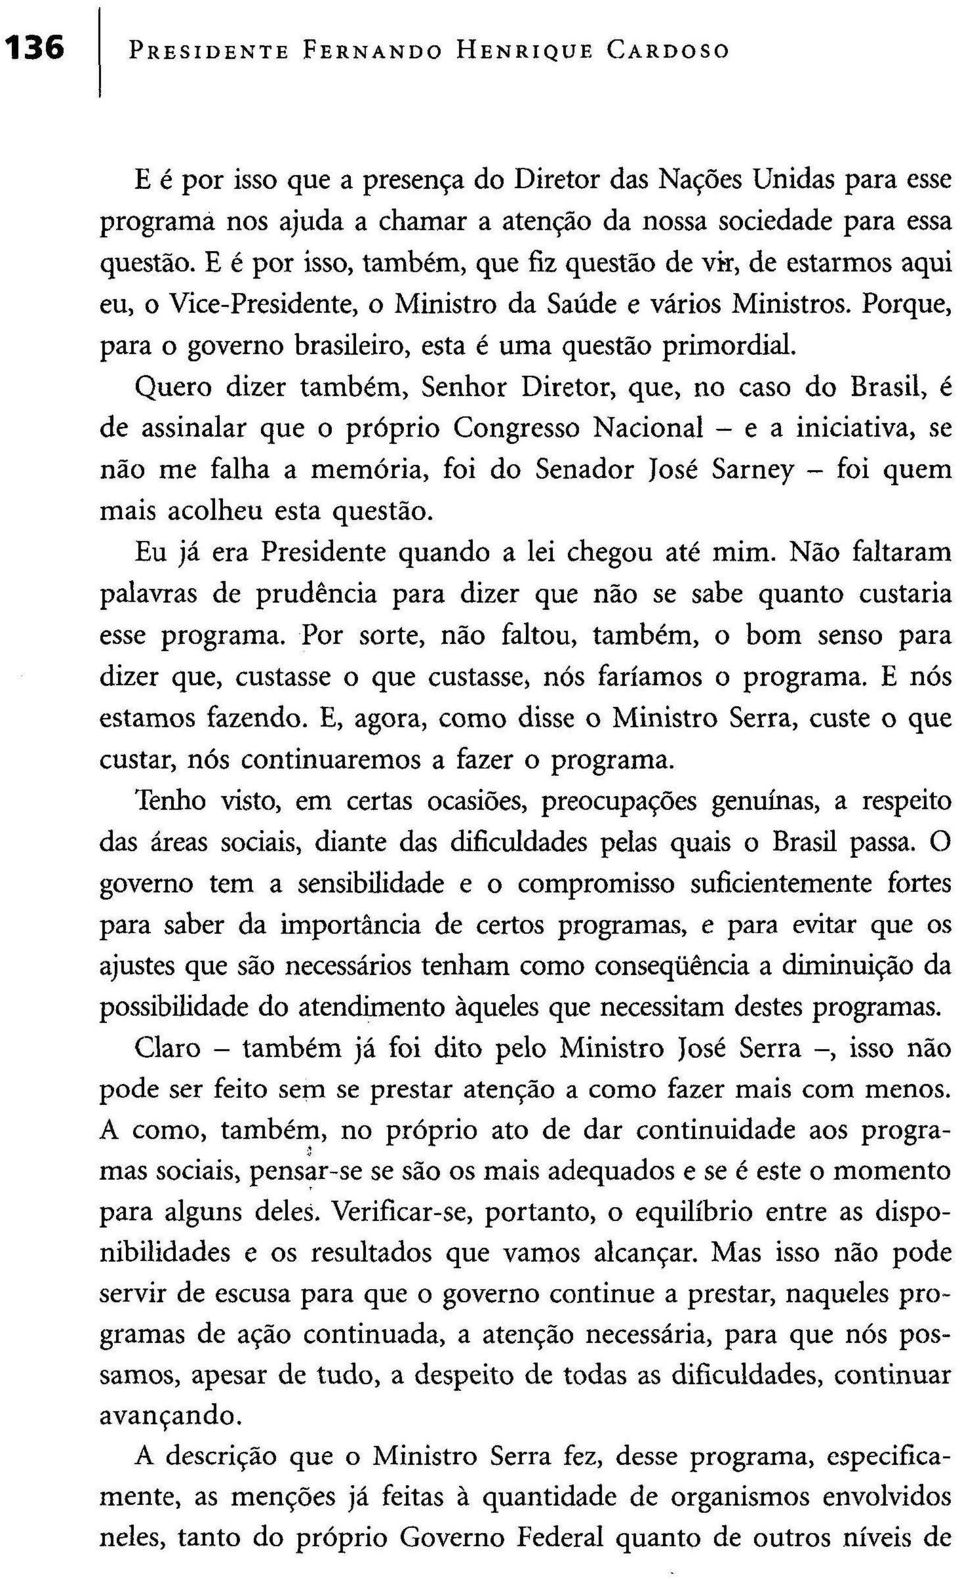 Quero dizer também, Senhor Diretor, que, no caso do Brasil, é de assinalar que o próprio Congresso Nacional - e a iniciativa, se não me falha a memória, foi do Senador José Sarney - foi quem mais